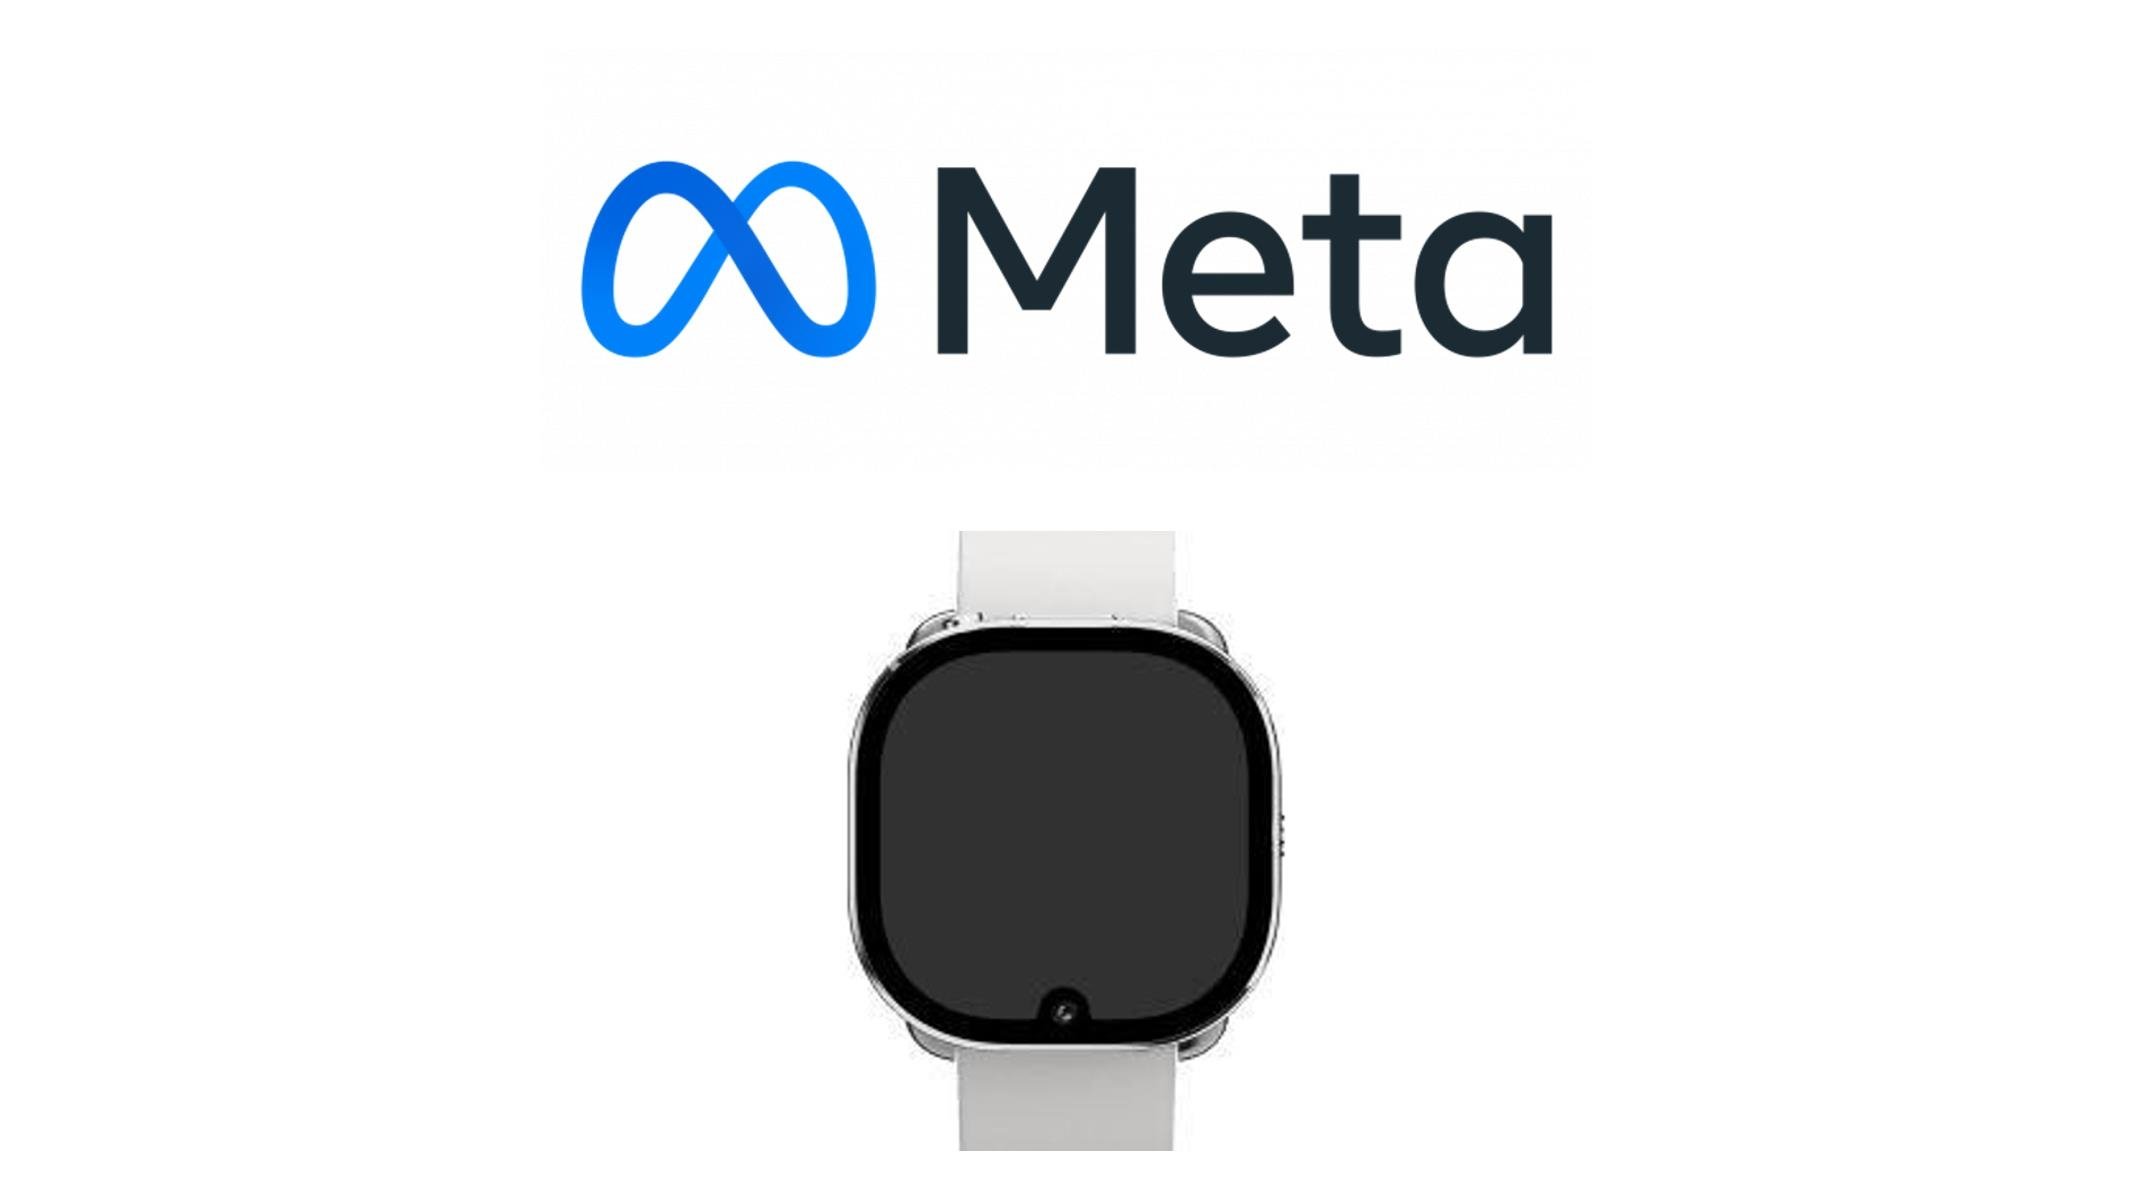 Smartwatch da Meta